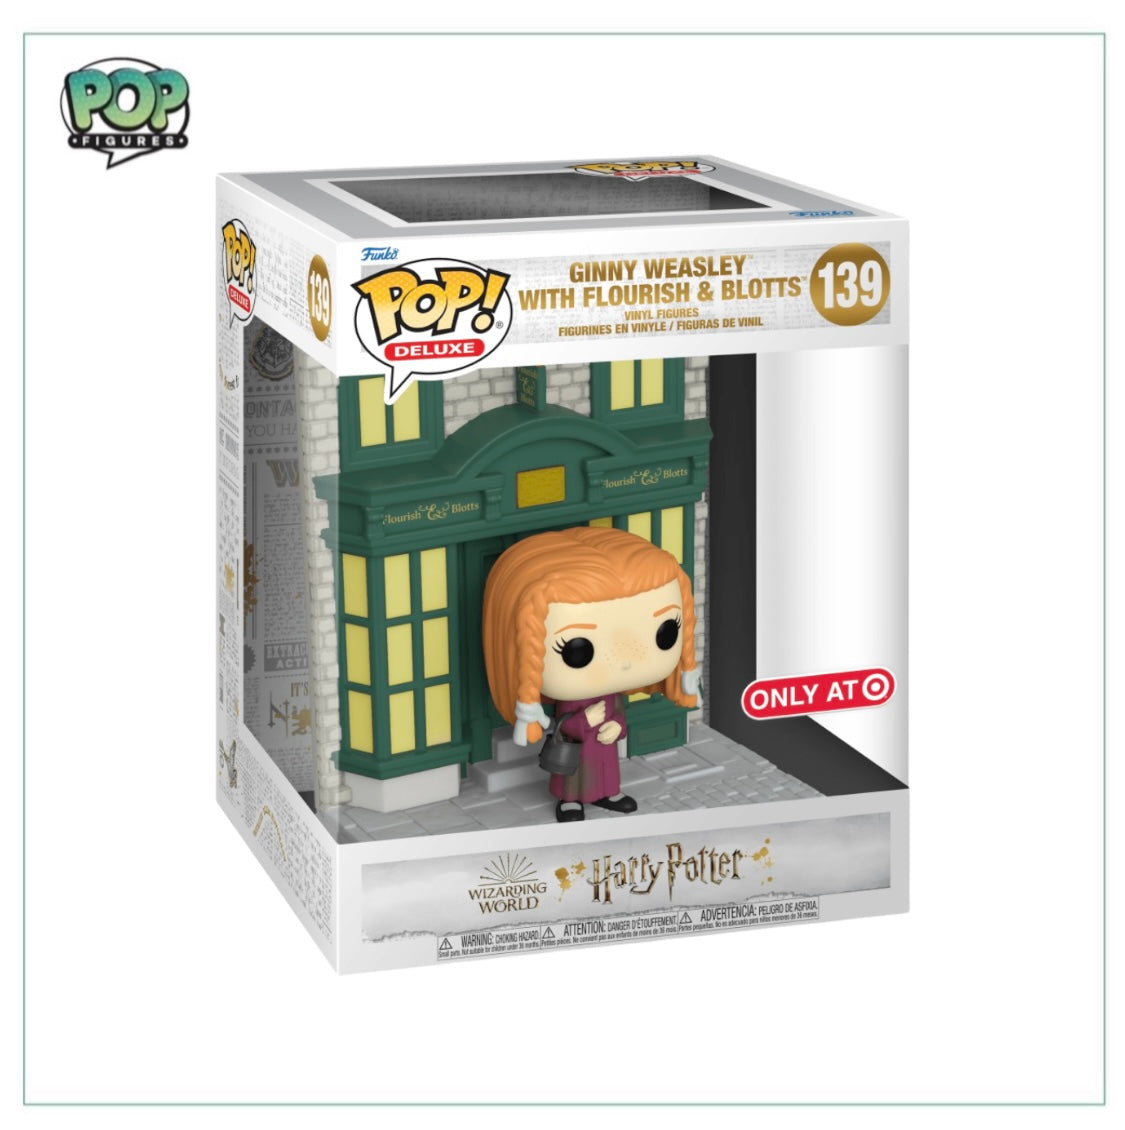 Ginny Weasley with Flourish & Blotts #139 Deluxe Funko Pop! - Harry Potter - Target Exclusive